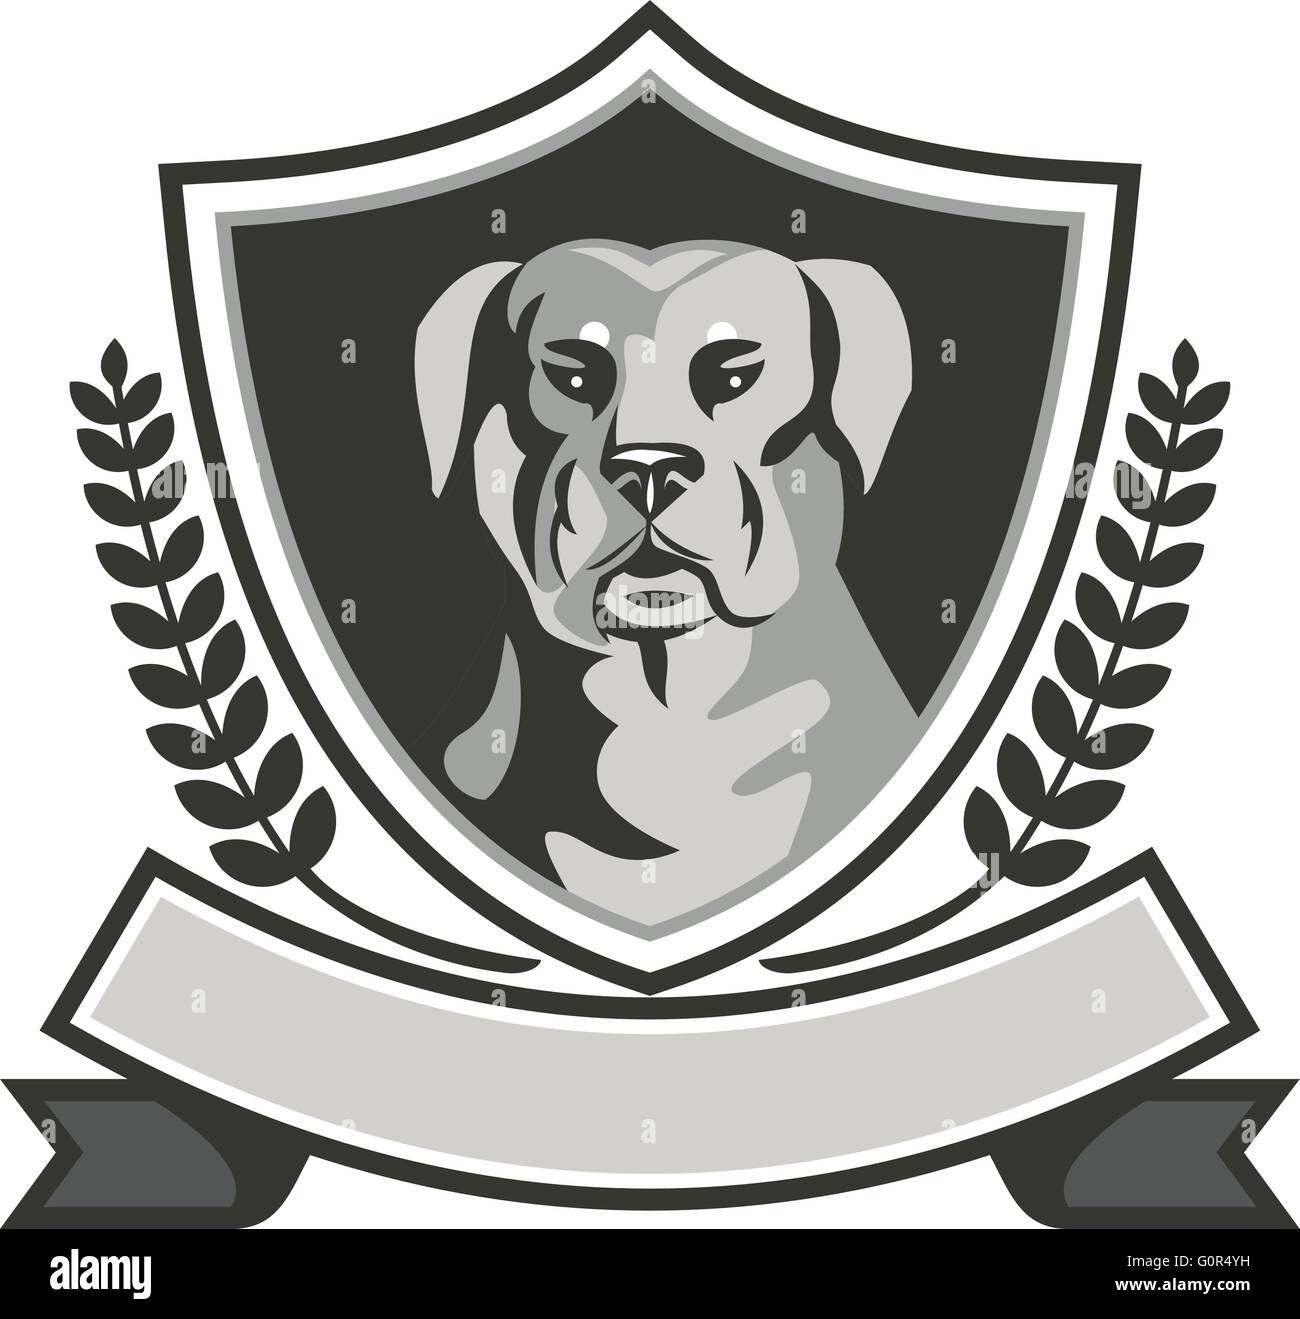 Bianco e nero illustrazione di un rottweiler Metzgerhund mastiff-cane cane da guardia capo visto dal set anteriore all'interno della protezione cresta con foglie di alloro e nastro fatto in stile retrò. Illustrazione Vettoriale